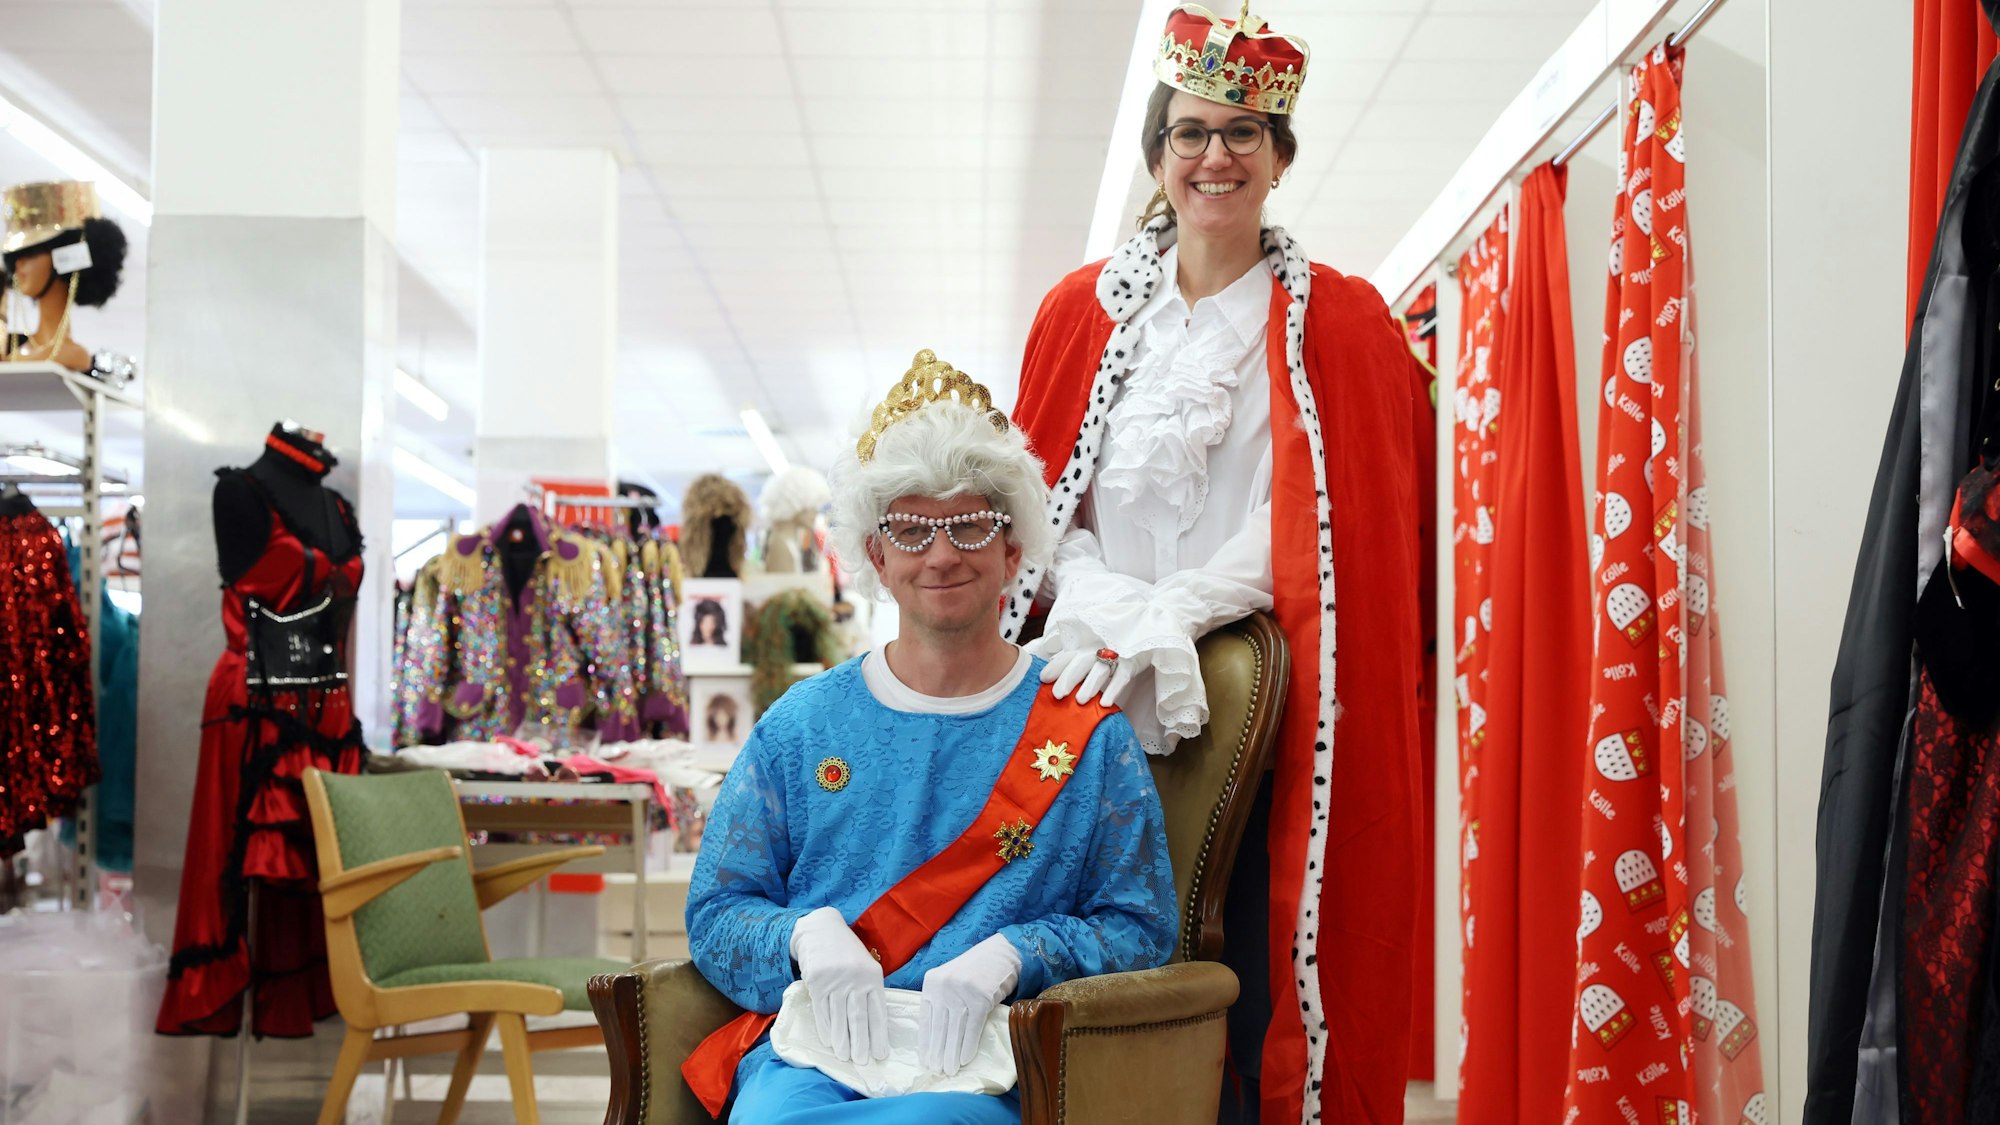 Barbara Grofe und Thorsten Breitkopf probieren verschiedene Verkleidungen in der Kölner Kostümkiste aus.





